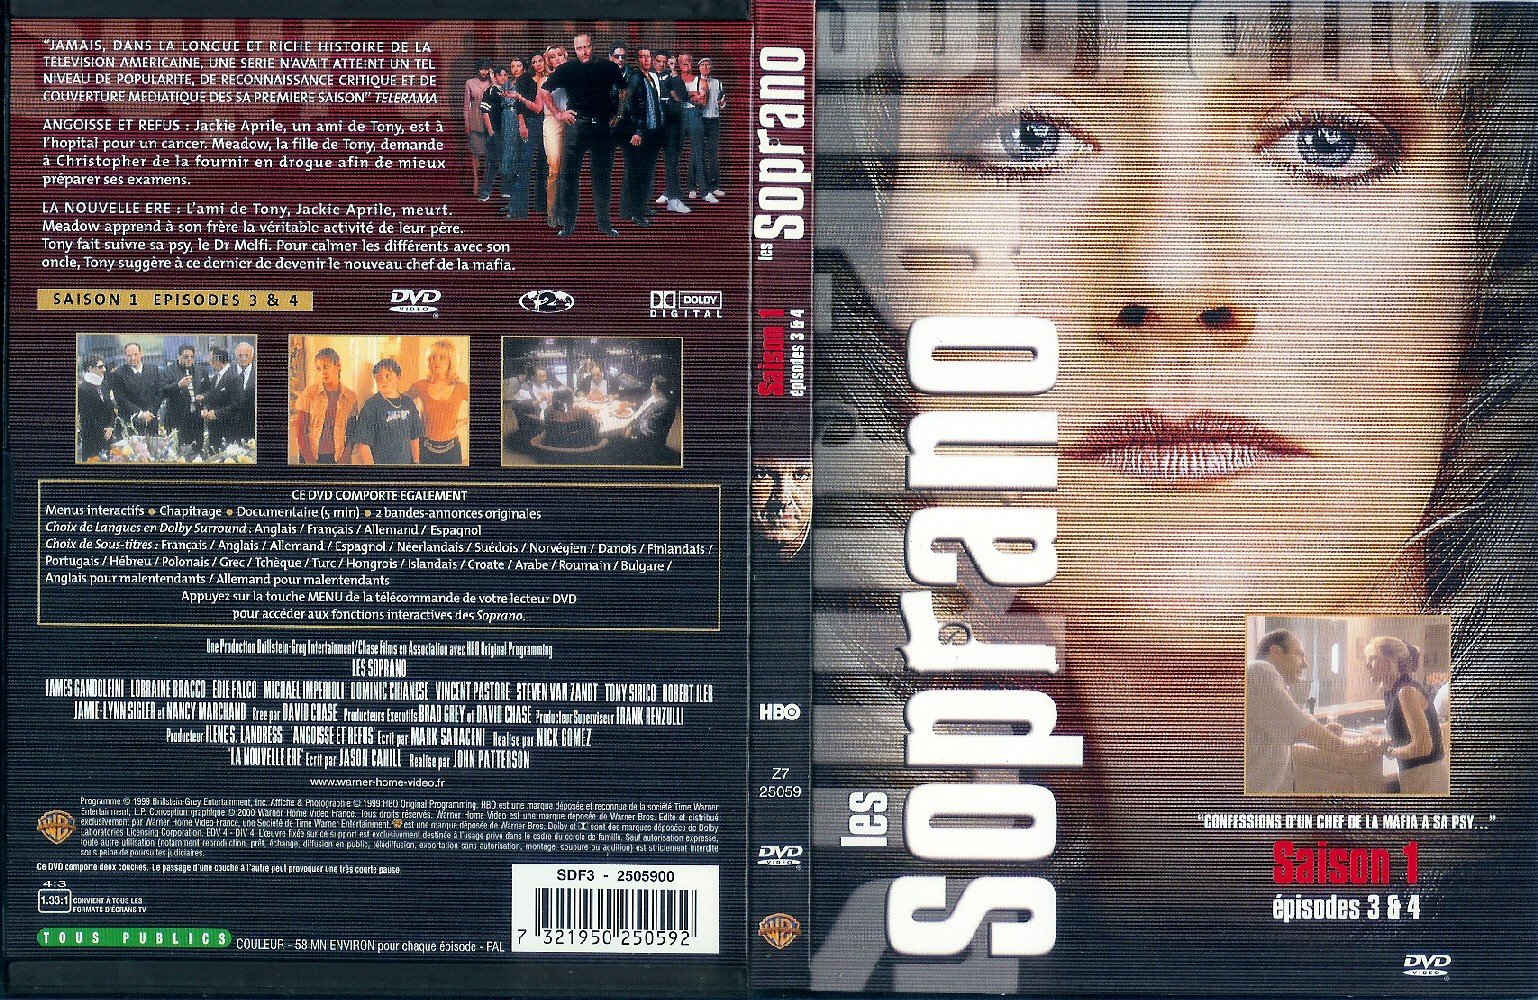 Jaquette DVD Les Soprano Saison 1 vol 2